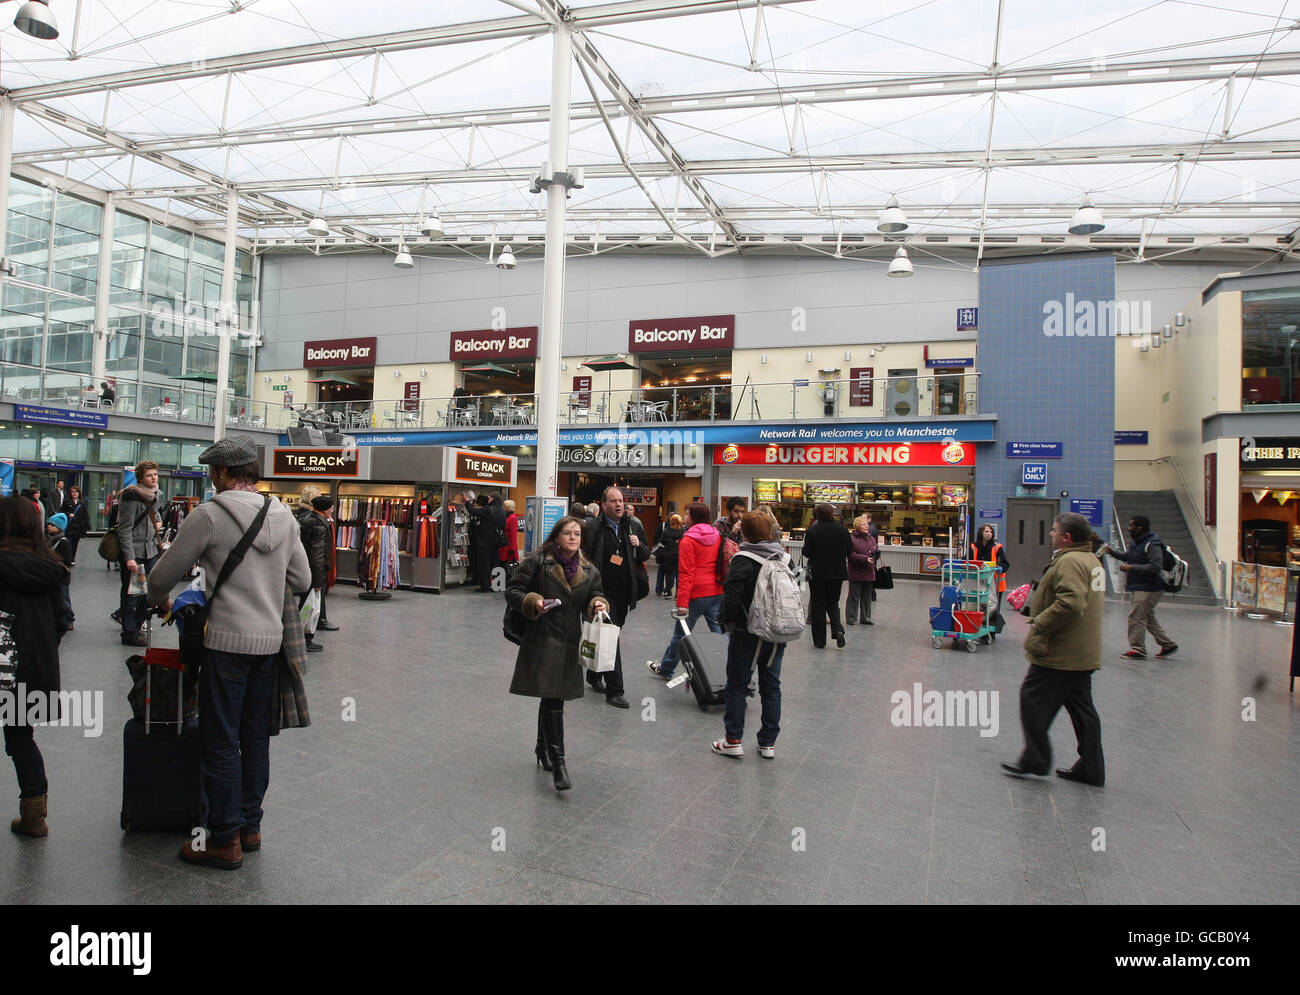 Ein allgemeines Bild des Bahnhofs Manchester Piccadilly. Stockfoto